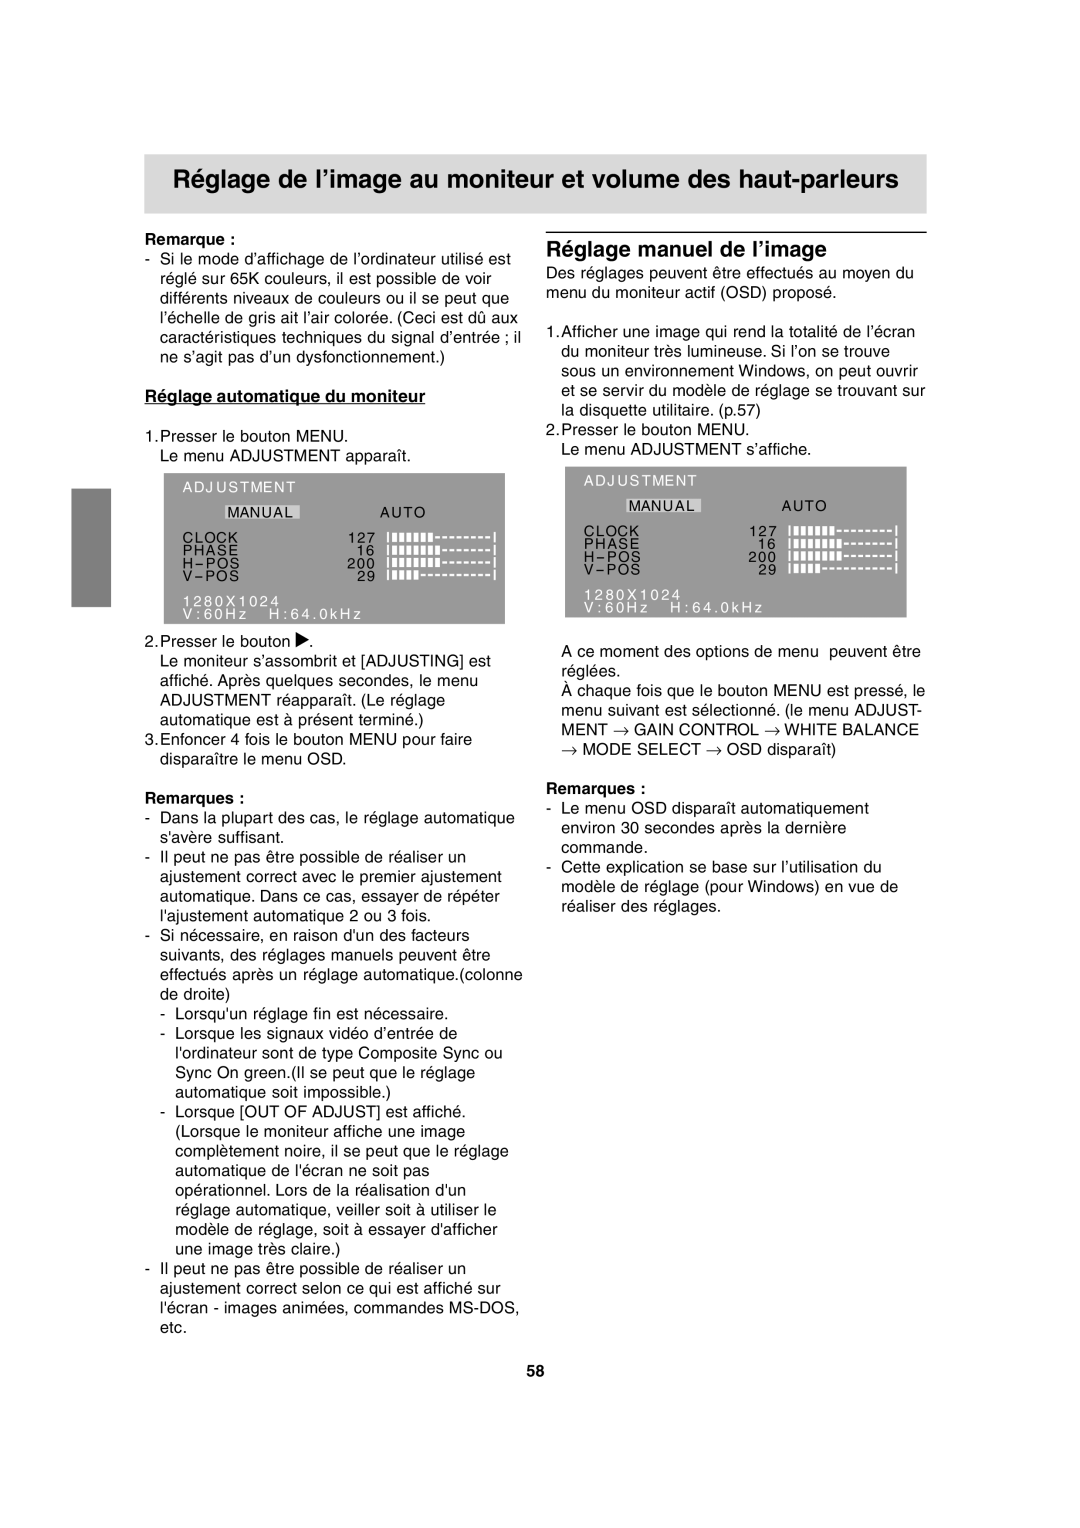 Sharp LL-T17A3 operation manual Réglage manuel de l’image, Réglage automatique du moniteur 